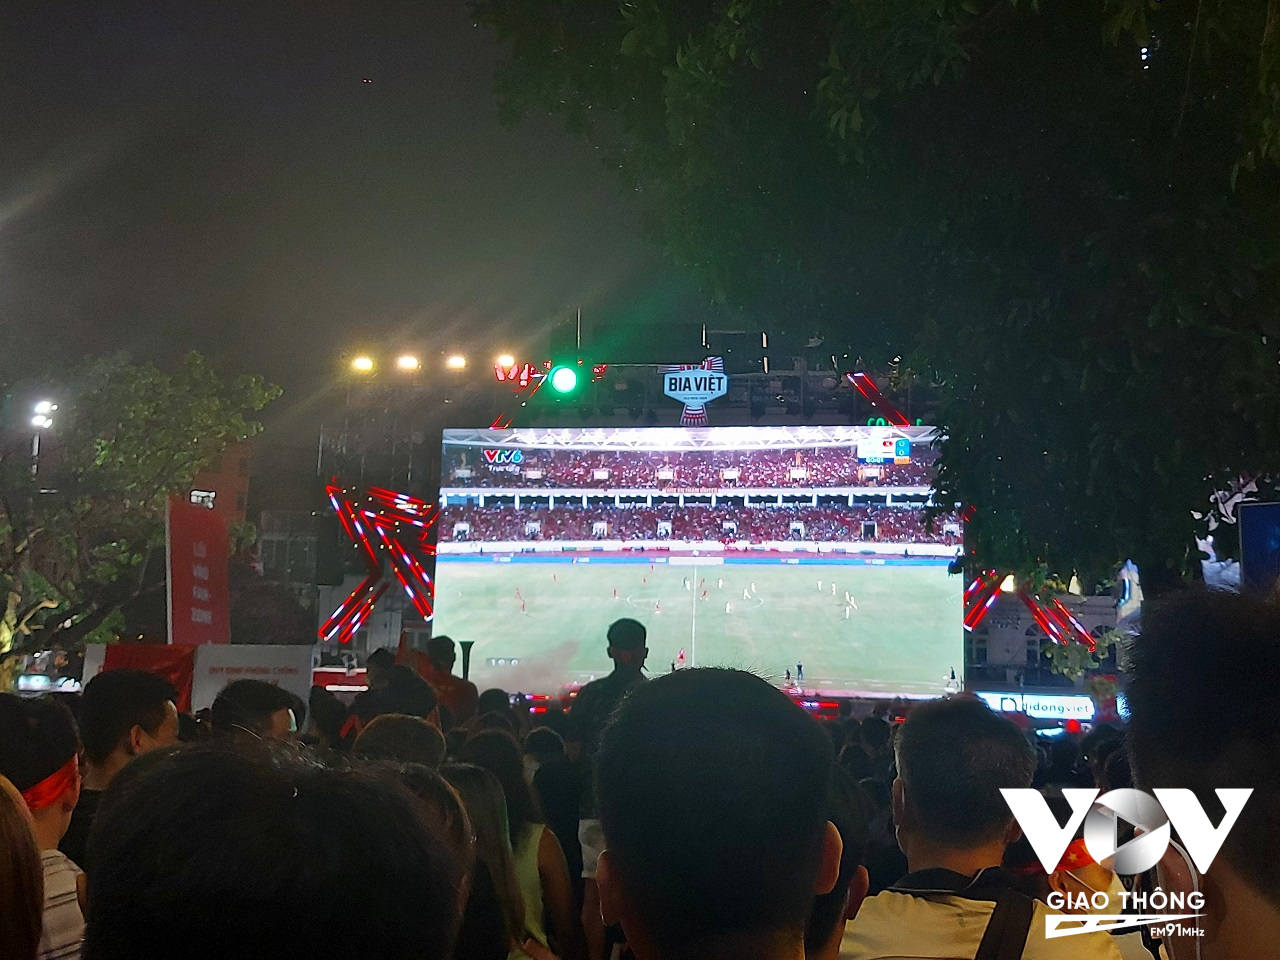 Thay vì chọn vào sân Mỹ Đình, nhiều người dân Hà Nội đã chọn quảng trường Đông Kinh Nghĩa Thục để theo dõi trận bóng đá Chung kết giữa U23 Việt Nam - Thái Lan.